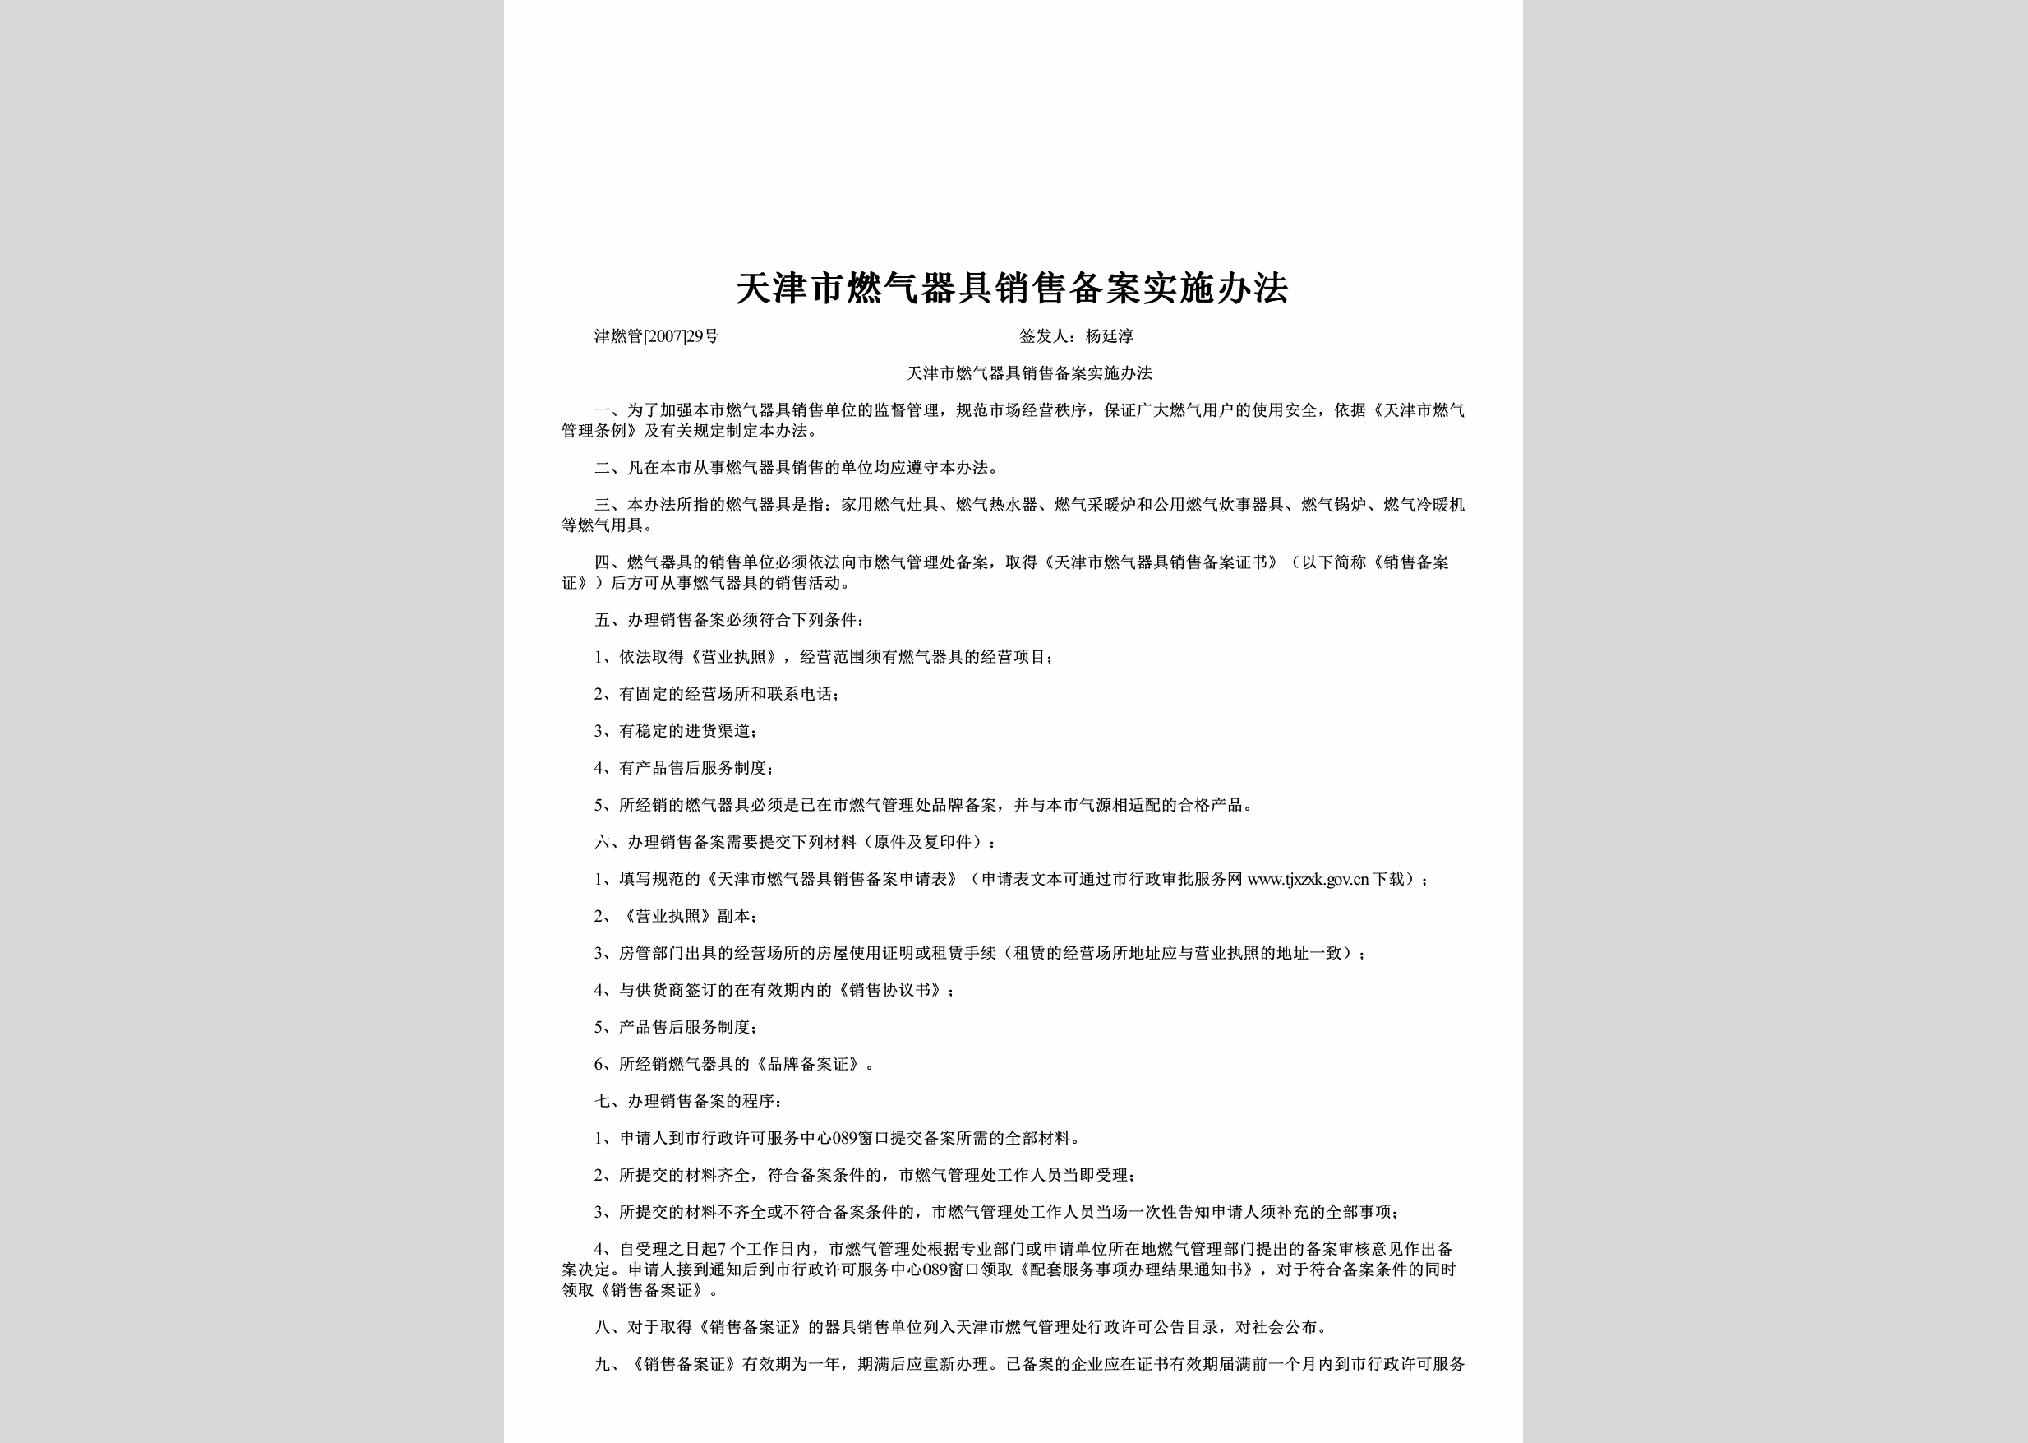 津燃管[2007]29号：天津市燃气器具销售备案实施办法